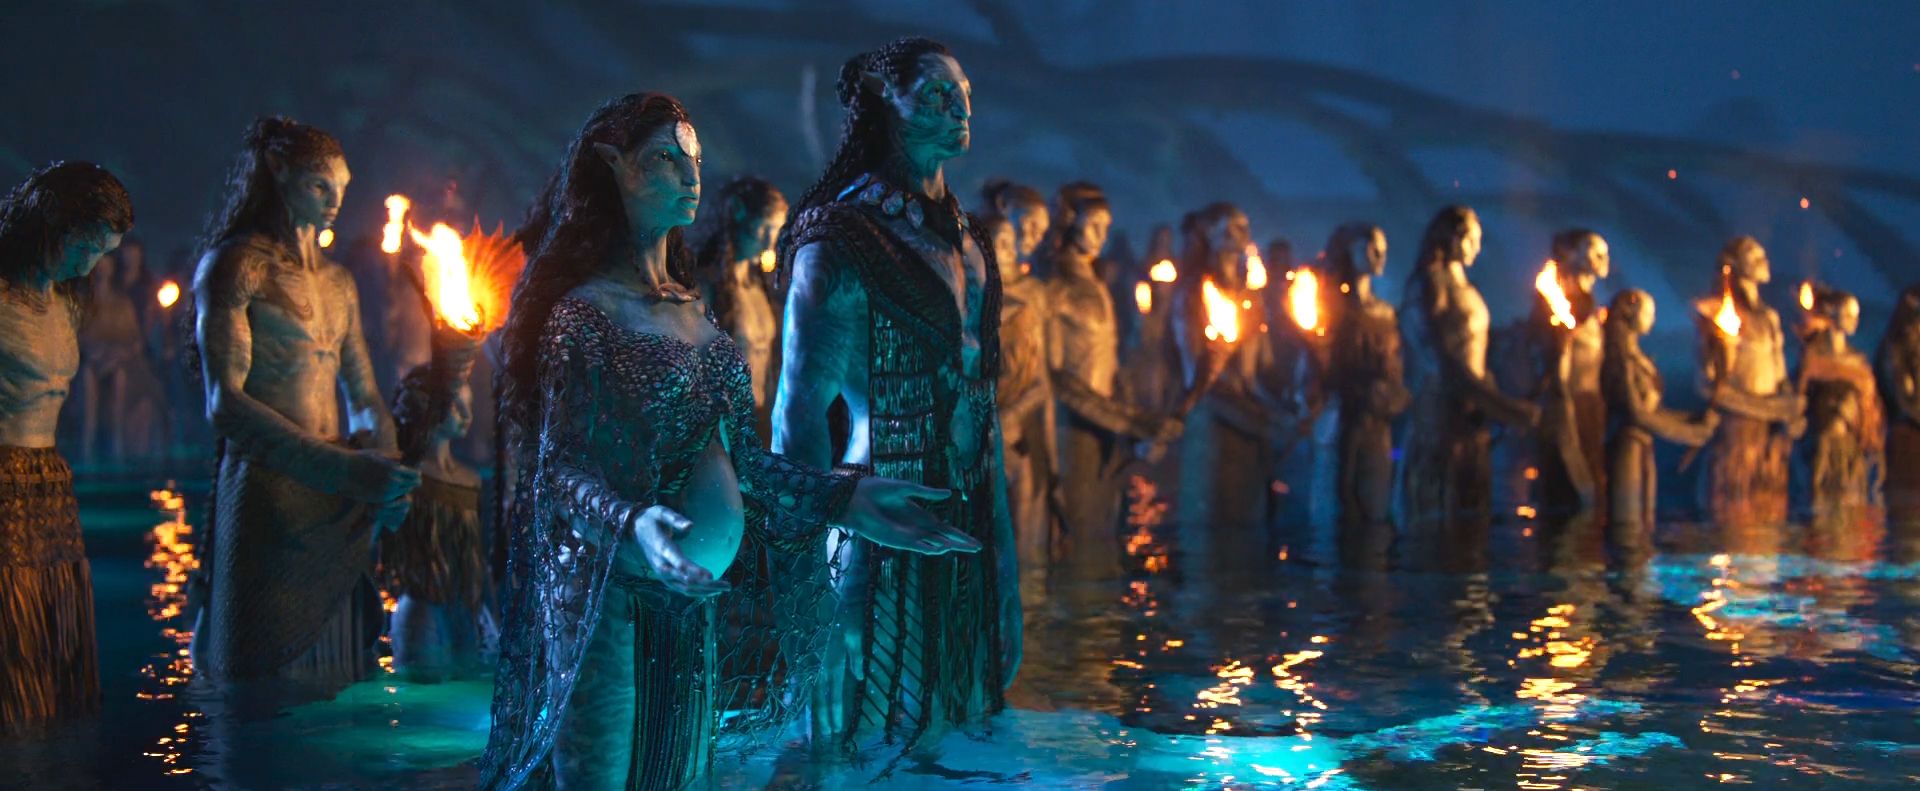 Avengers Endgame Breaks Avatar Record Becomes Highest Grossing Film Of  All Time  RVCJ Media